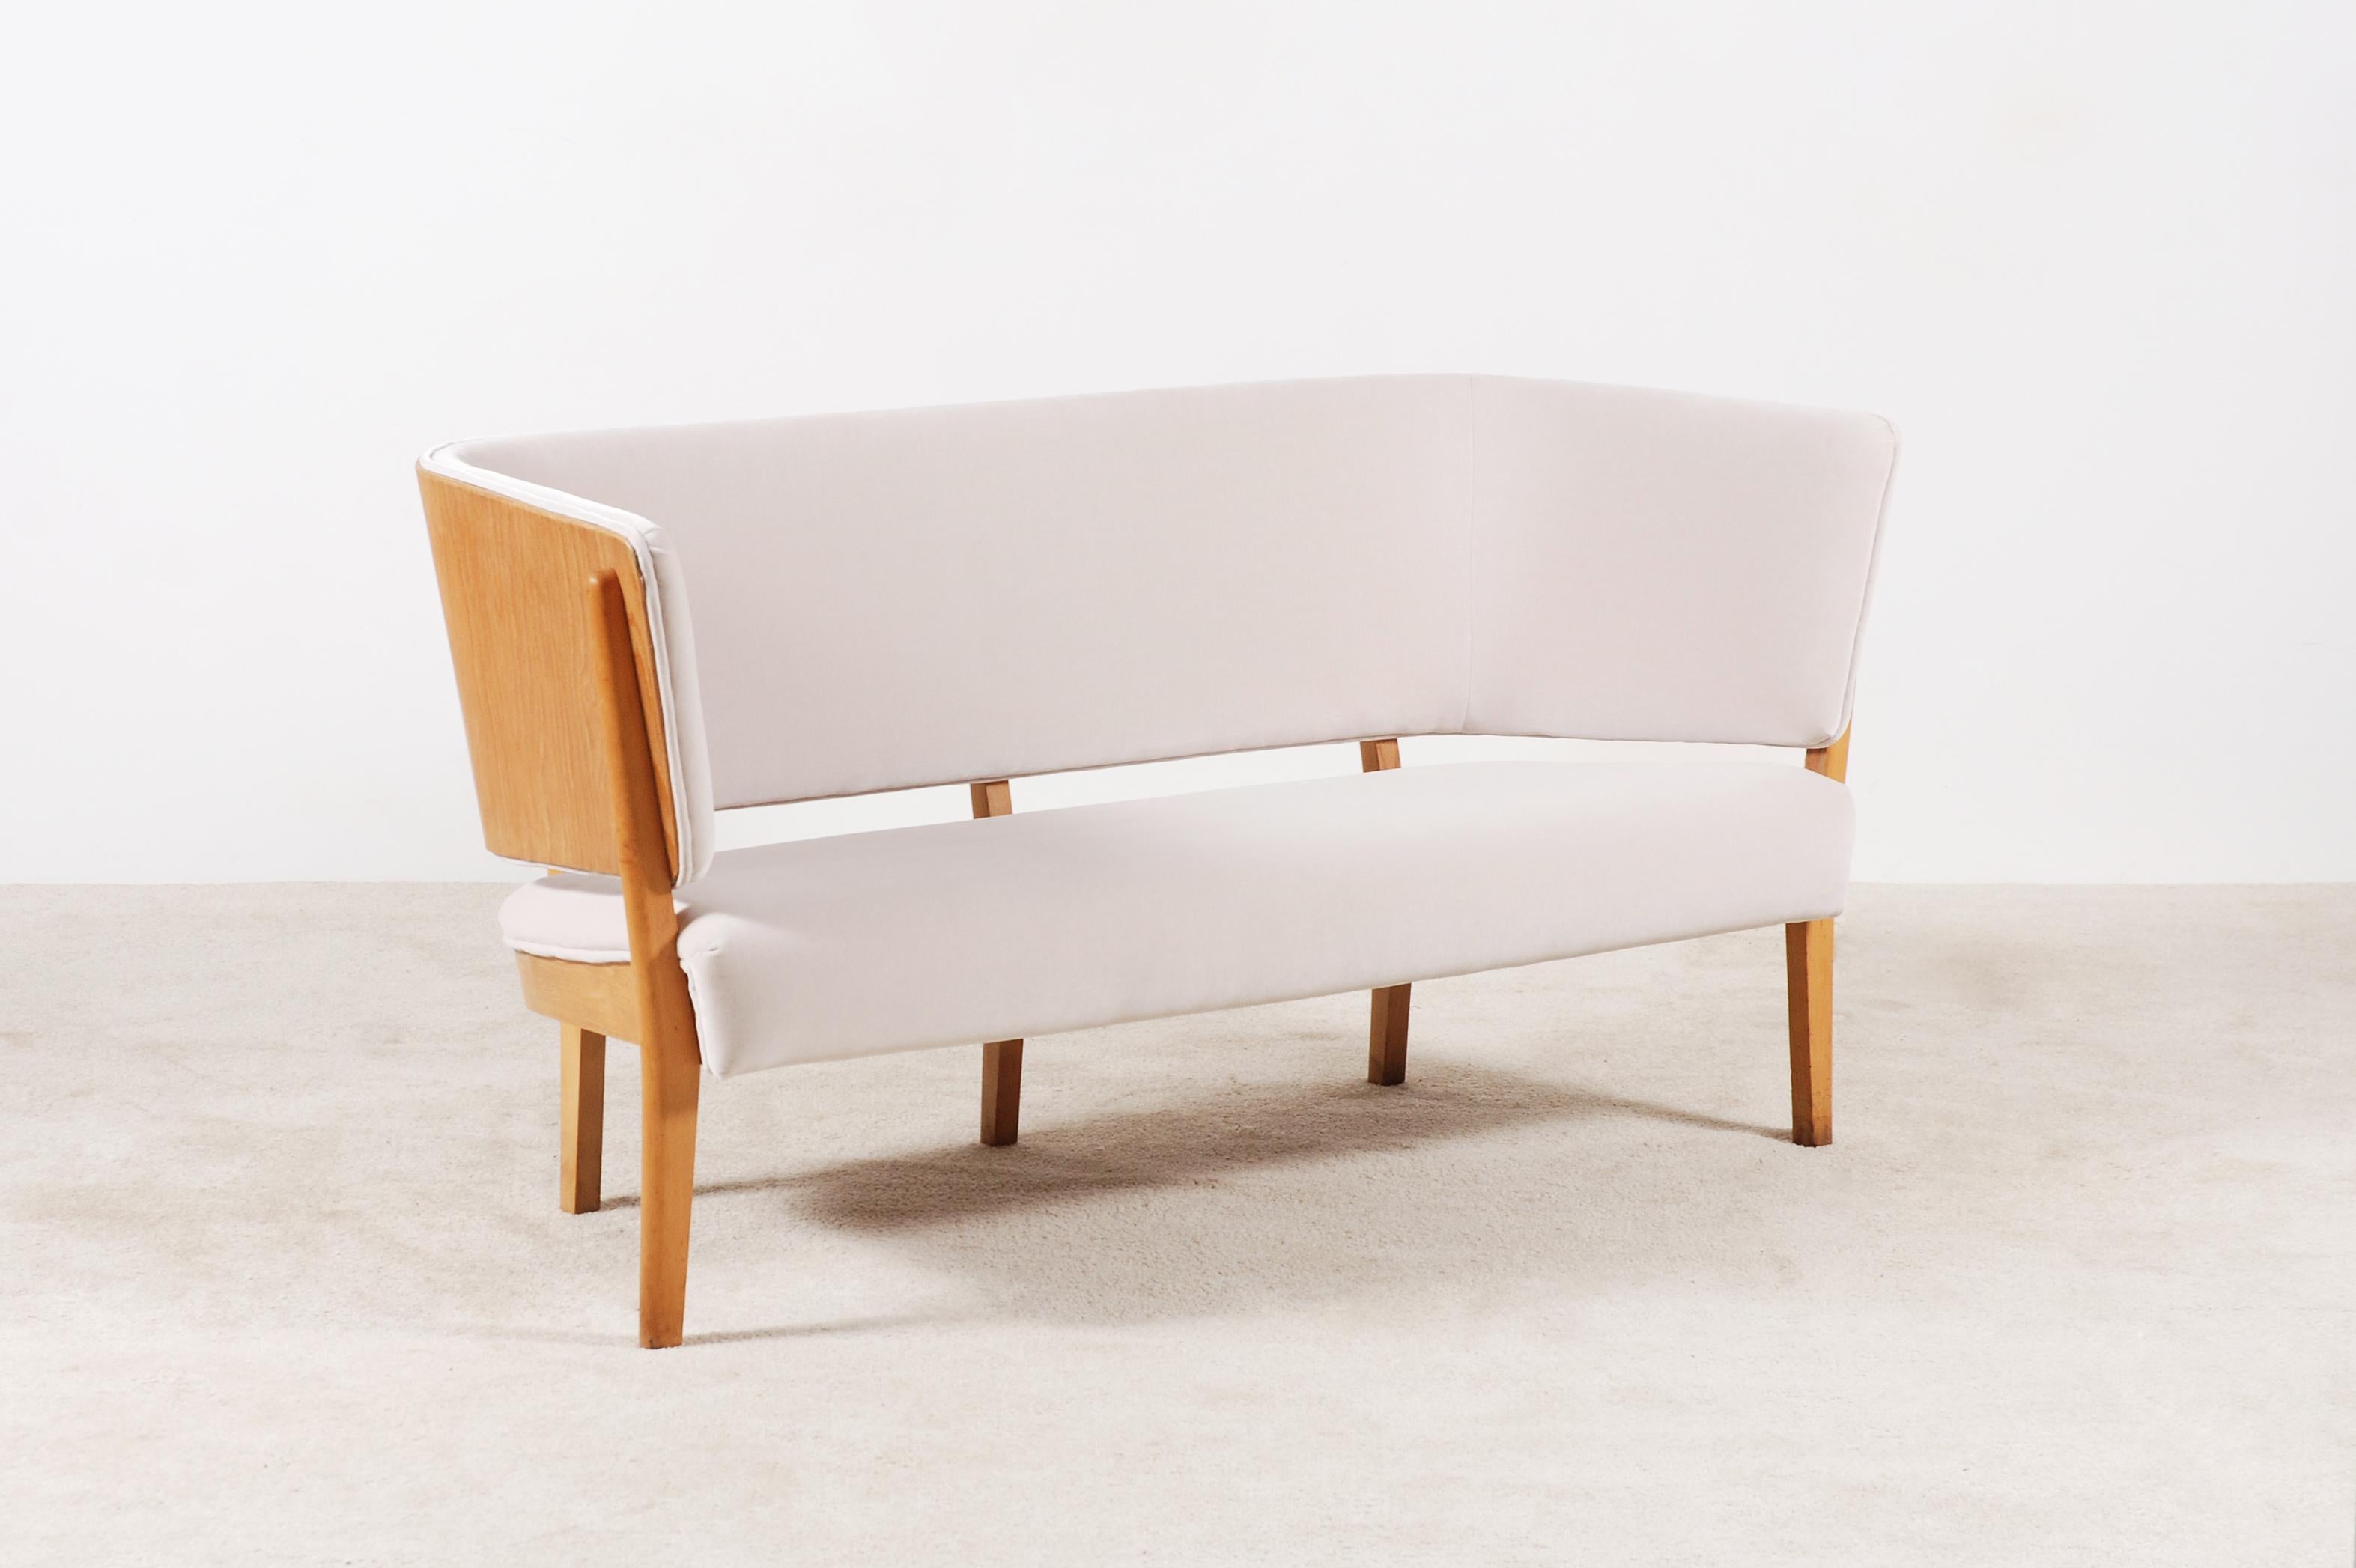 Canapé deux places, modèle 2240, en bois de Beeche, conçu par Søren Hansen en 1939 et fabriqué par Fritz Hansen. 
Il s'agit d'une pièce rare et de collection.
En tant que pièce sculpturale, ce charmant canapé/banc pourrait trouver sa place dans